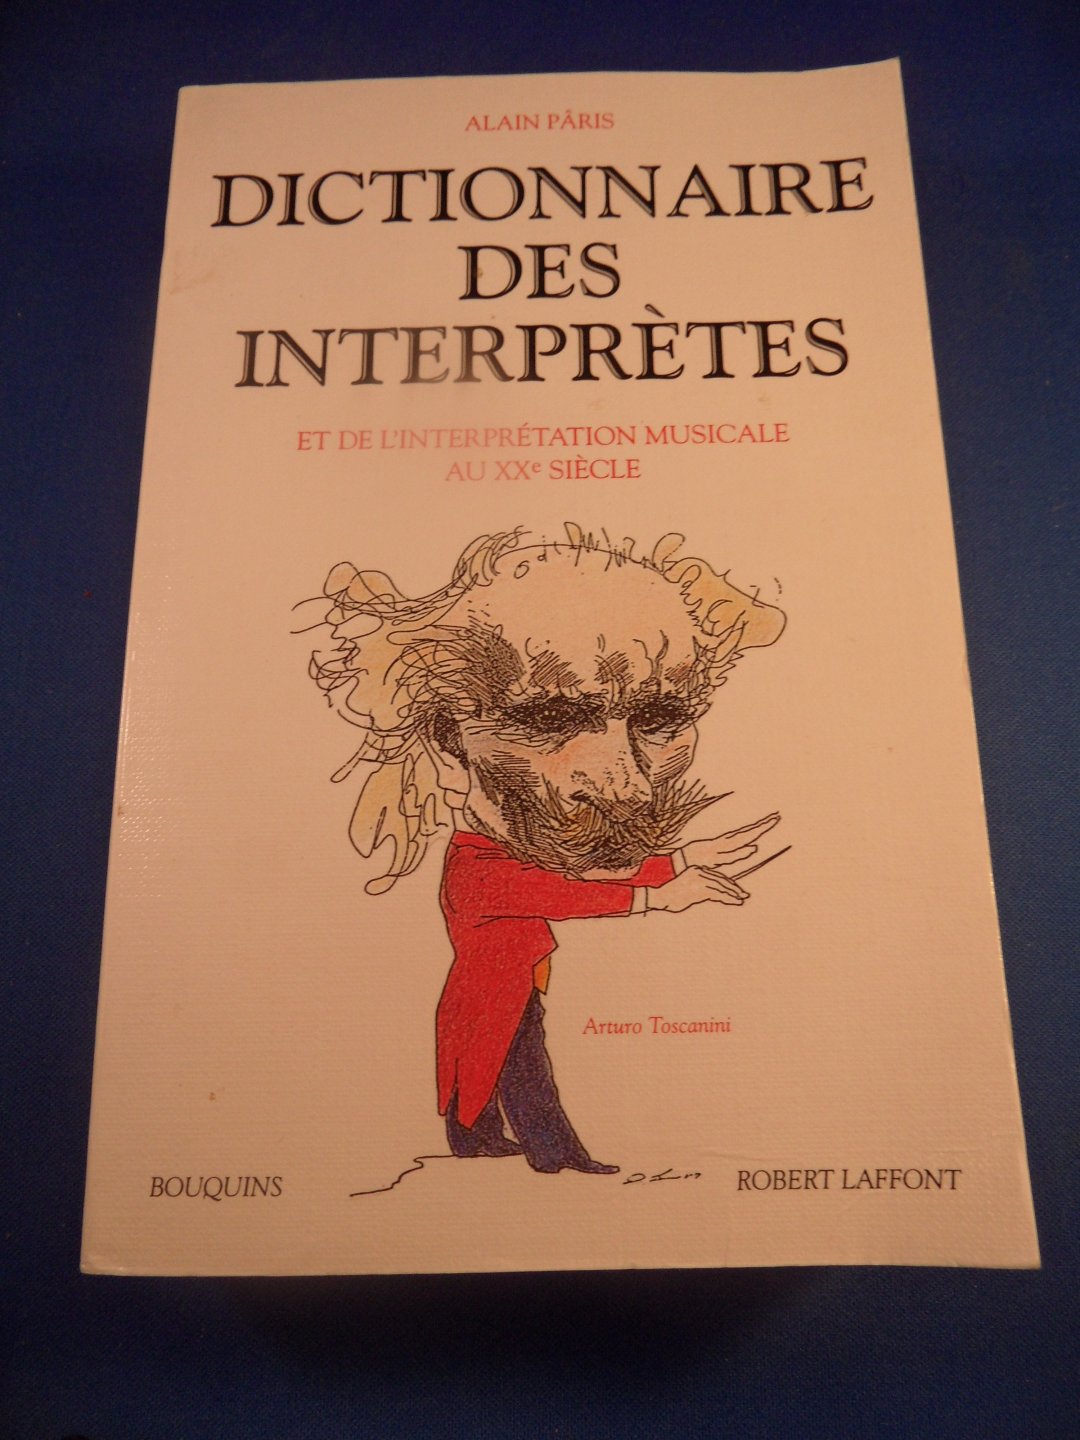 Paris, Alain - Dictionnaire des Interpretes et de l'interprétation musicale au Xxe siecle